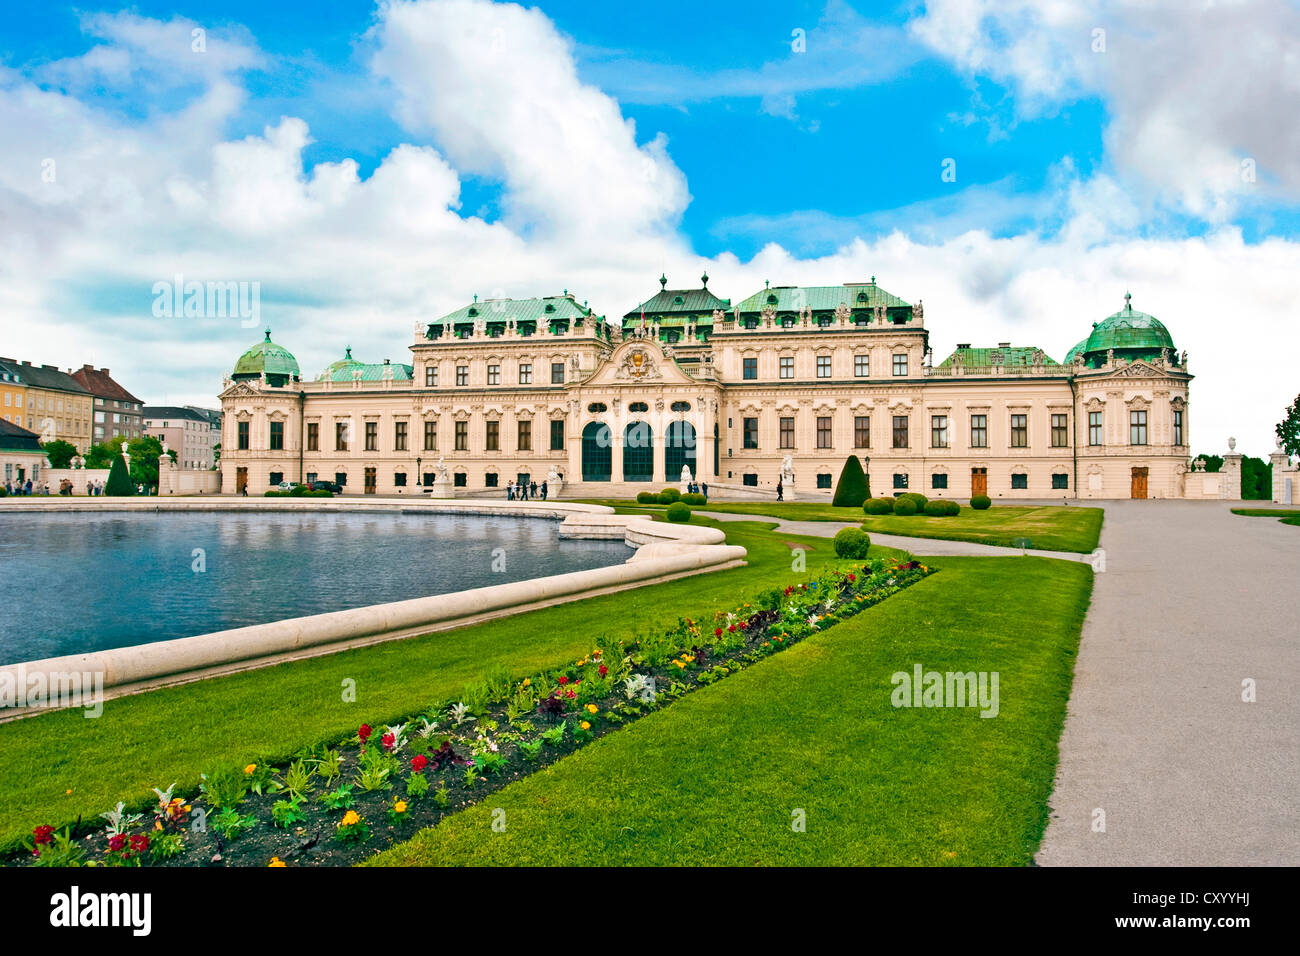 Front Facade of Schloss Schonbrunn palace, Vienna, Wein, Austria Stock Photo